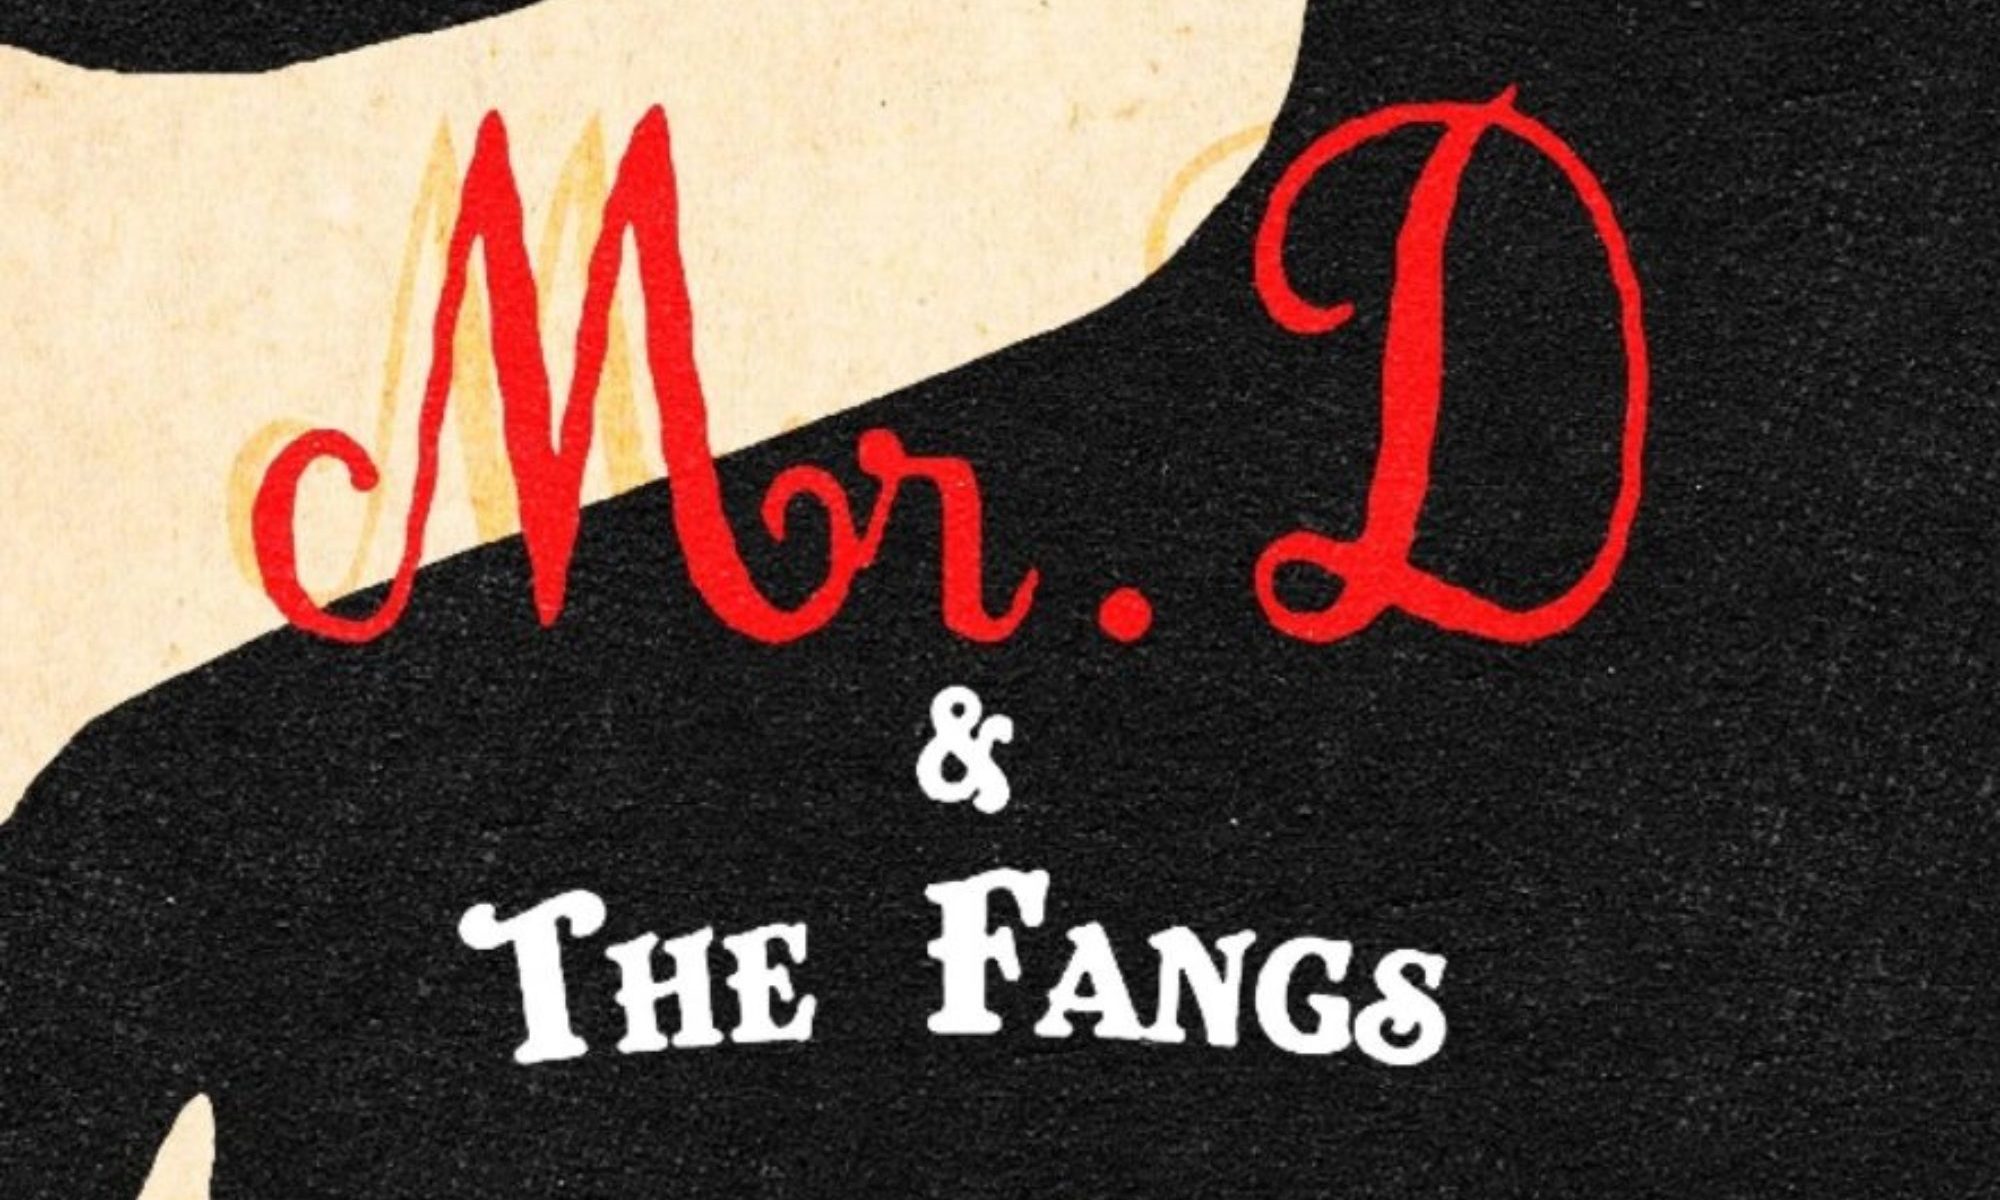 Mr D & The Fangs